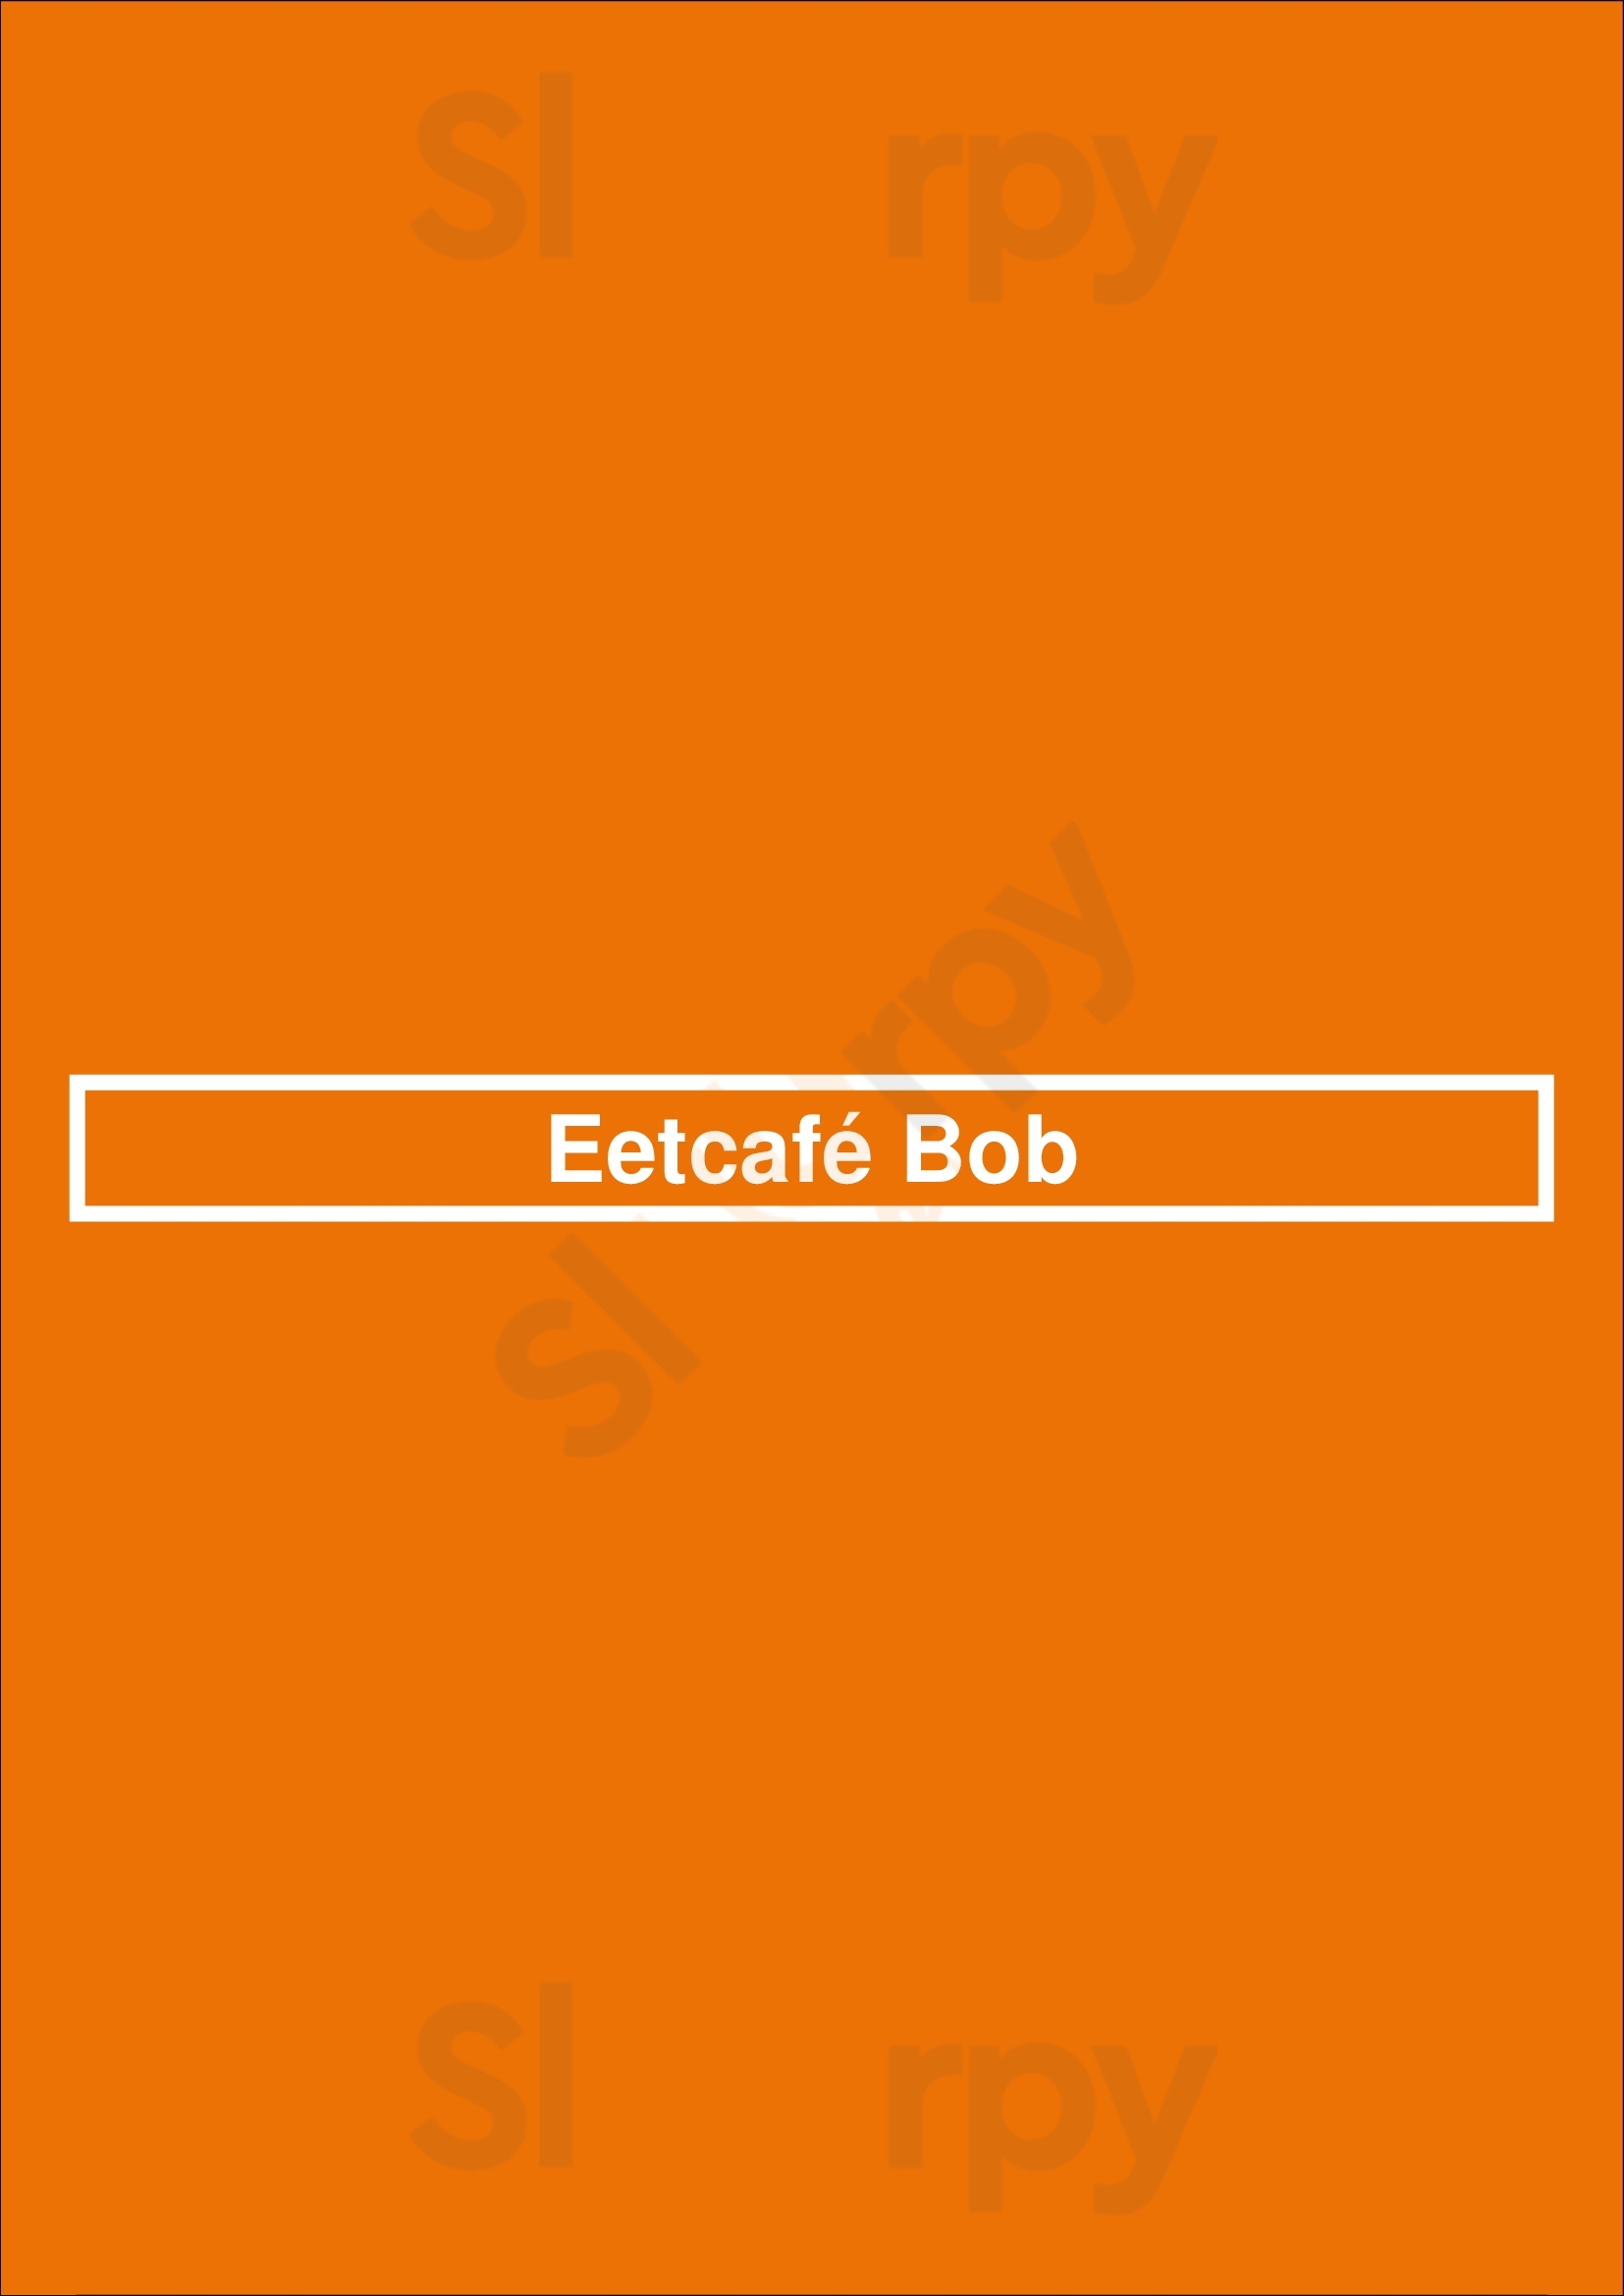 Eetcafé Bob Apeldoorn Menu - 1